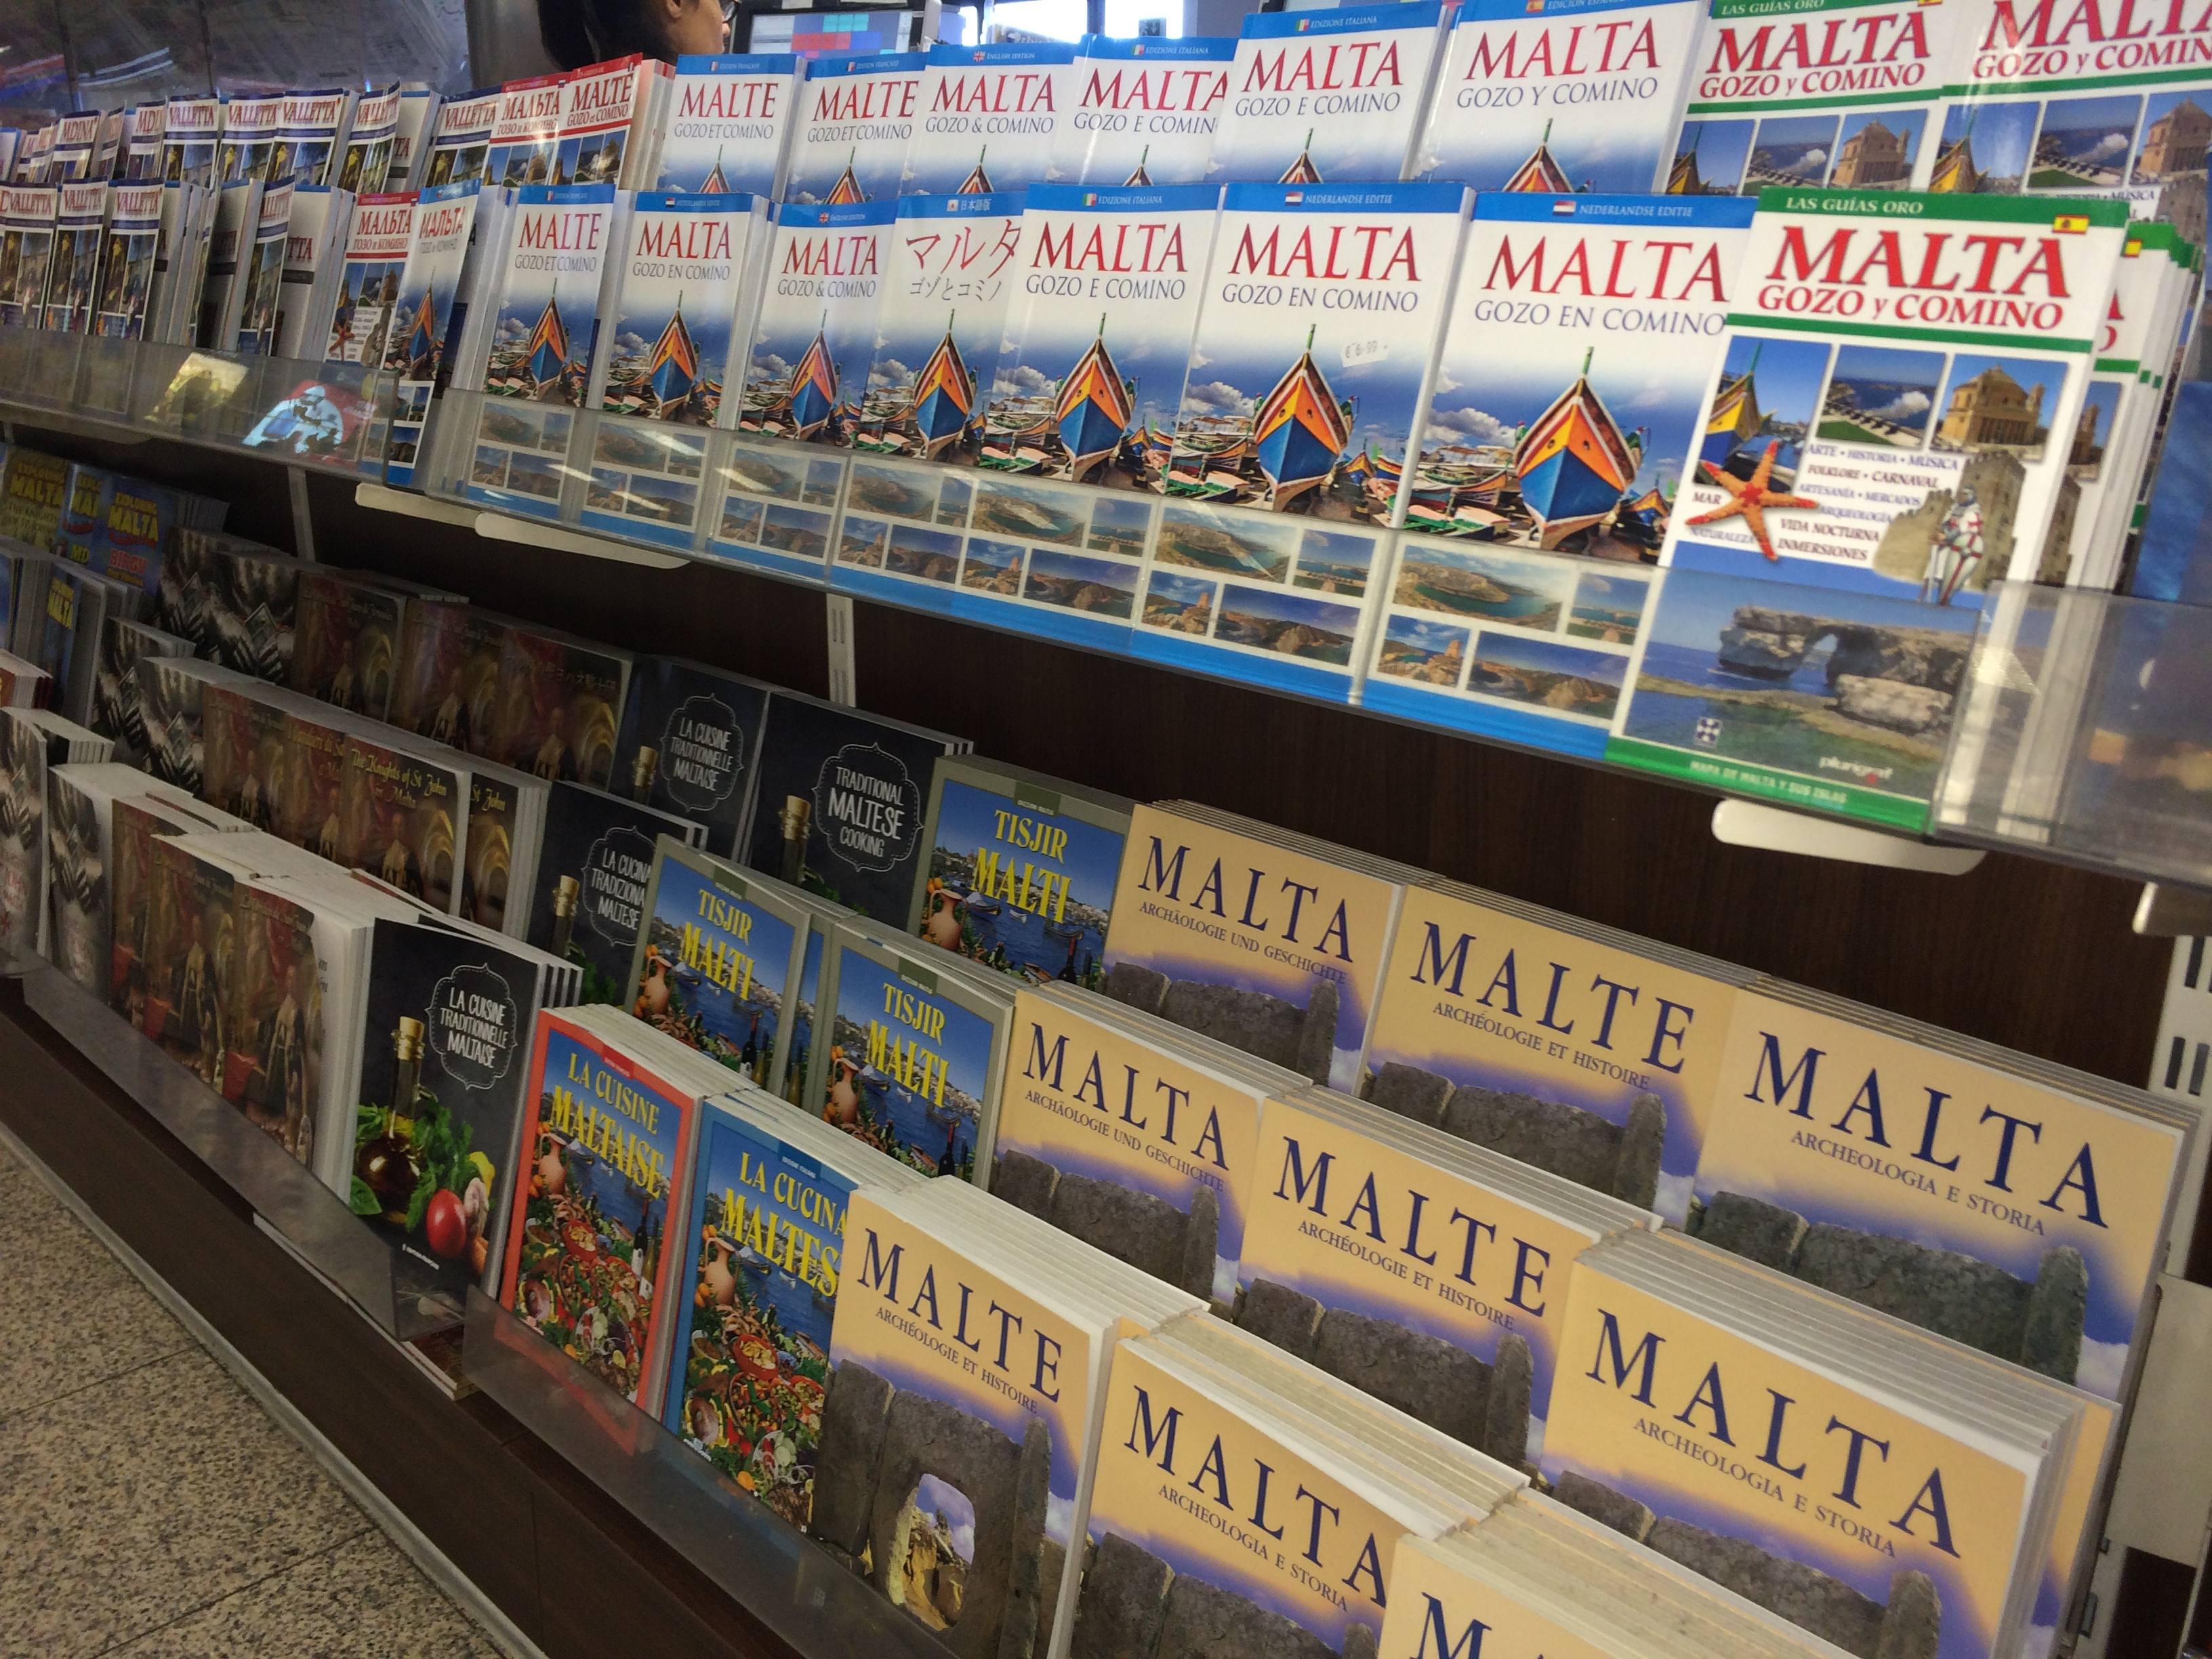 Translations of Malta Guidebooks